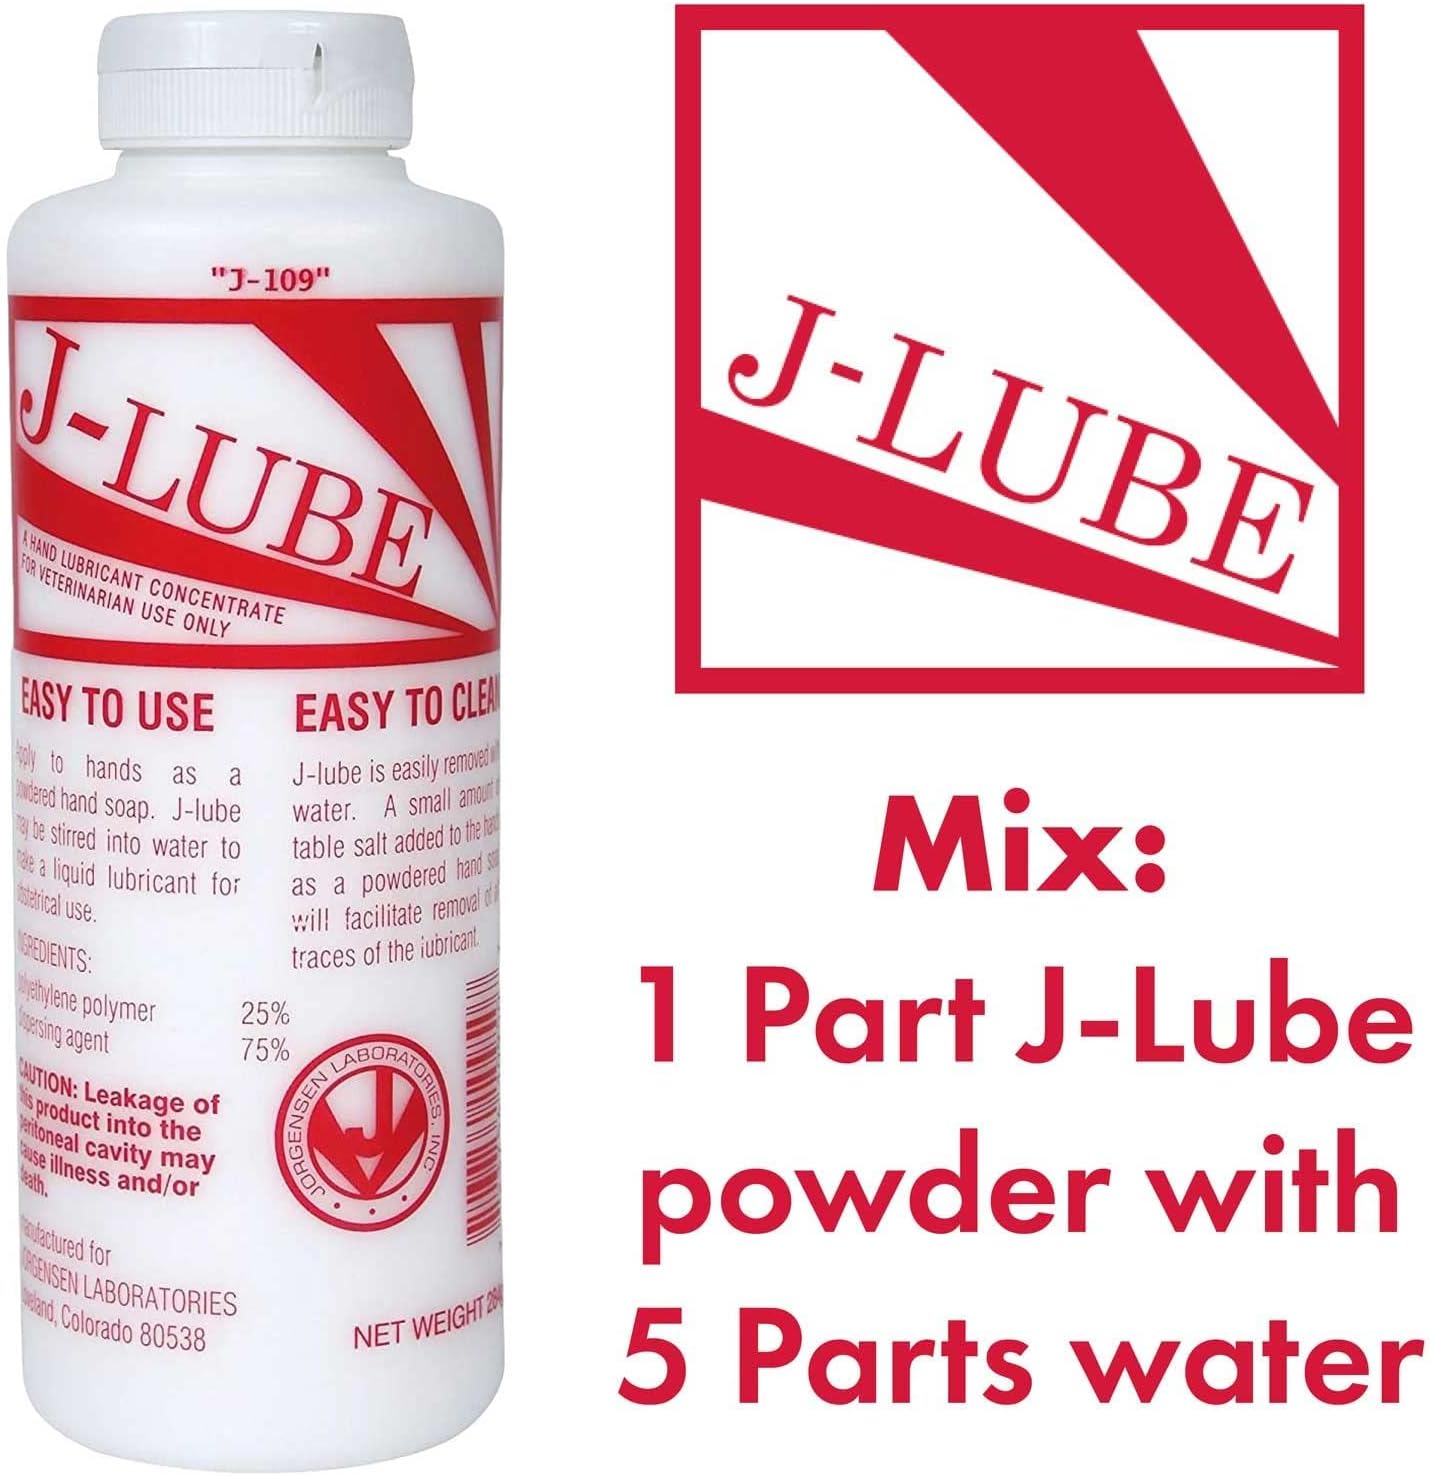 J-LUBE Fisting Powder